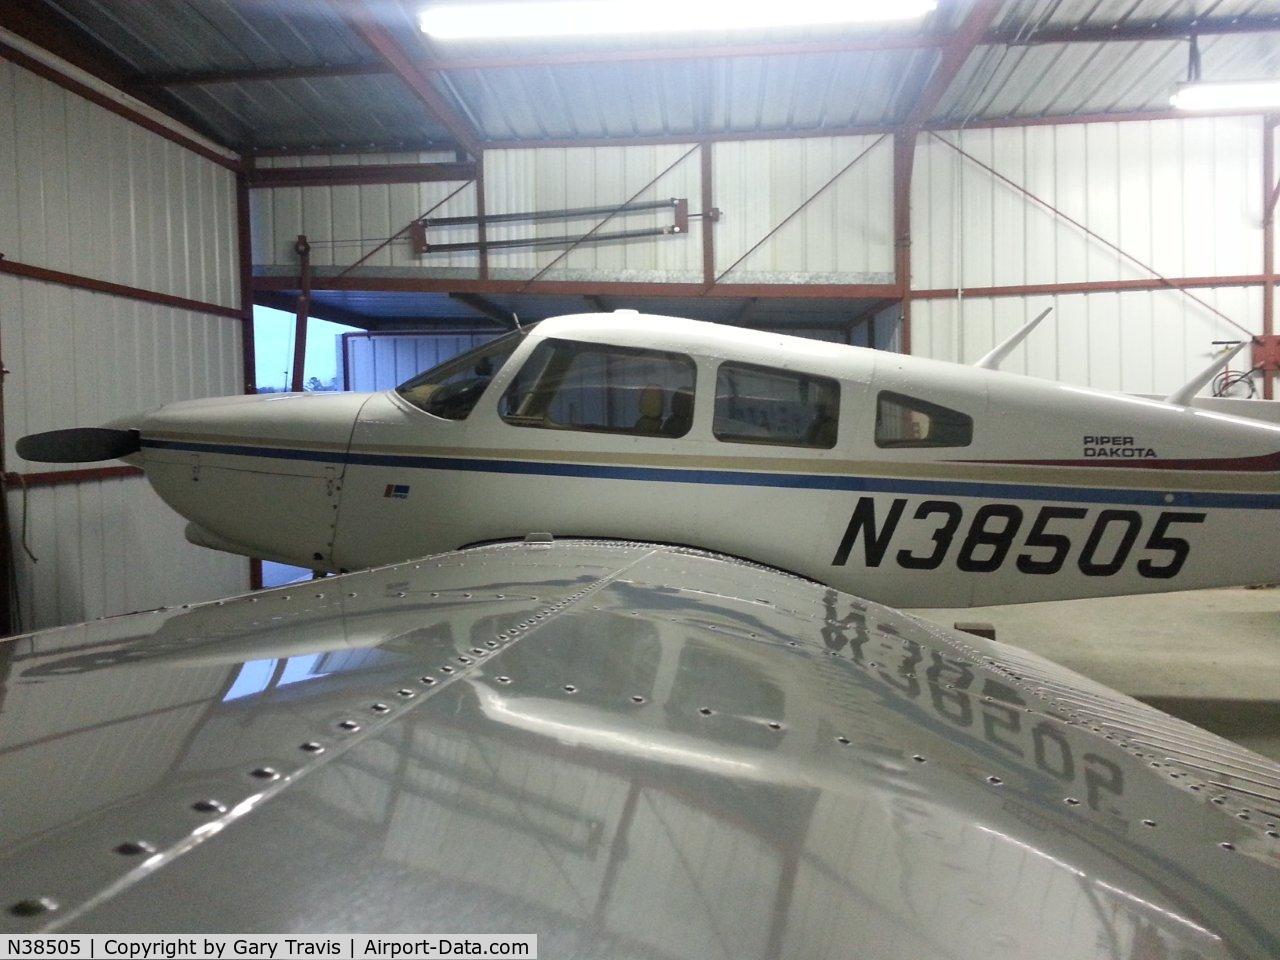 N38505, 1977 Piper PA-28-236 Dakota C/N 28-7911001, N38505 in Hangar 2-7-14